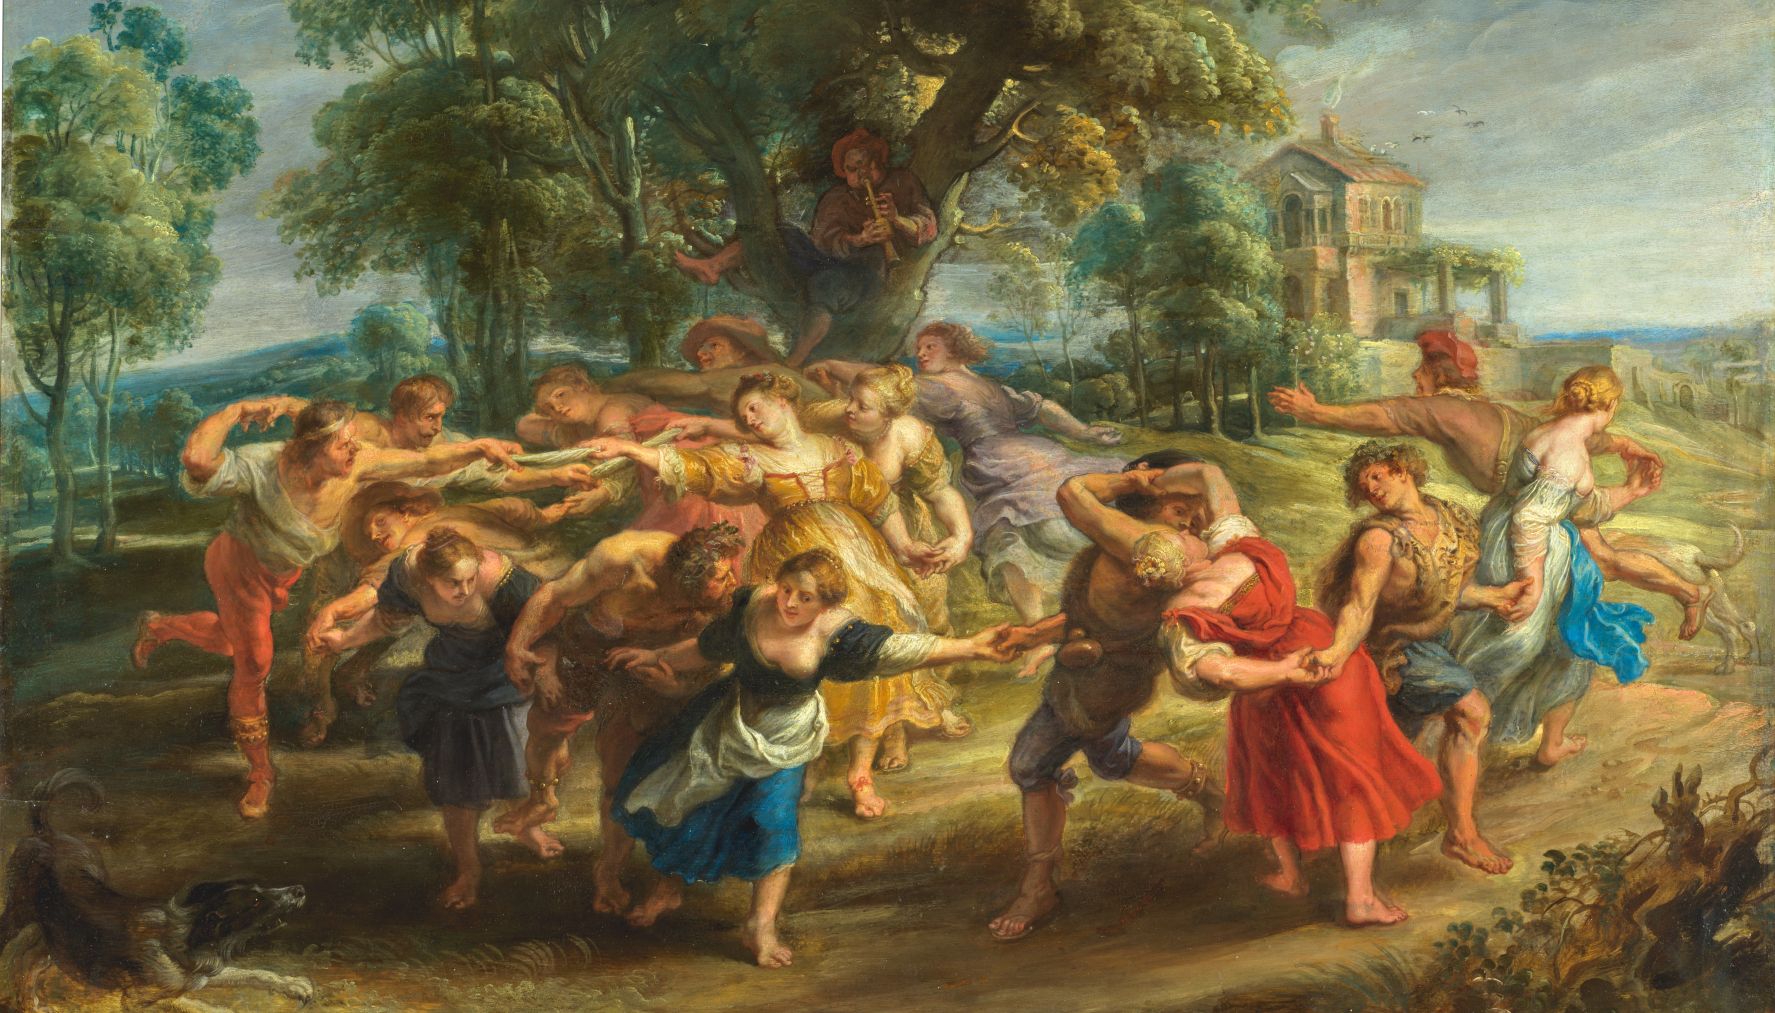 Detalle de la Danza de personajes mitológicos y aldeanos Rubens Madrid, Museo Nacional del Prado @MuseodelPrado